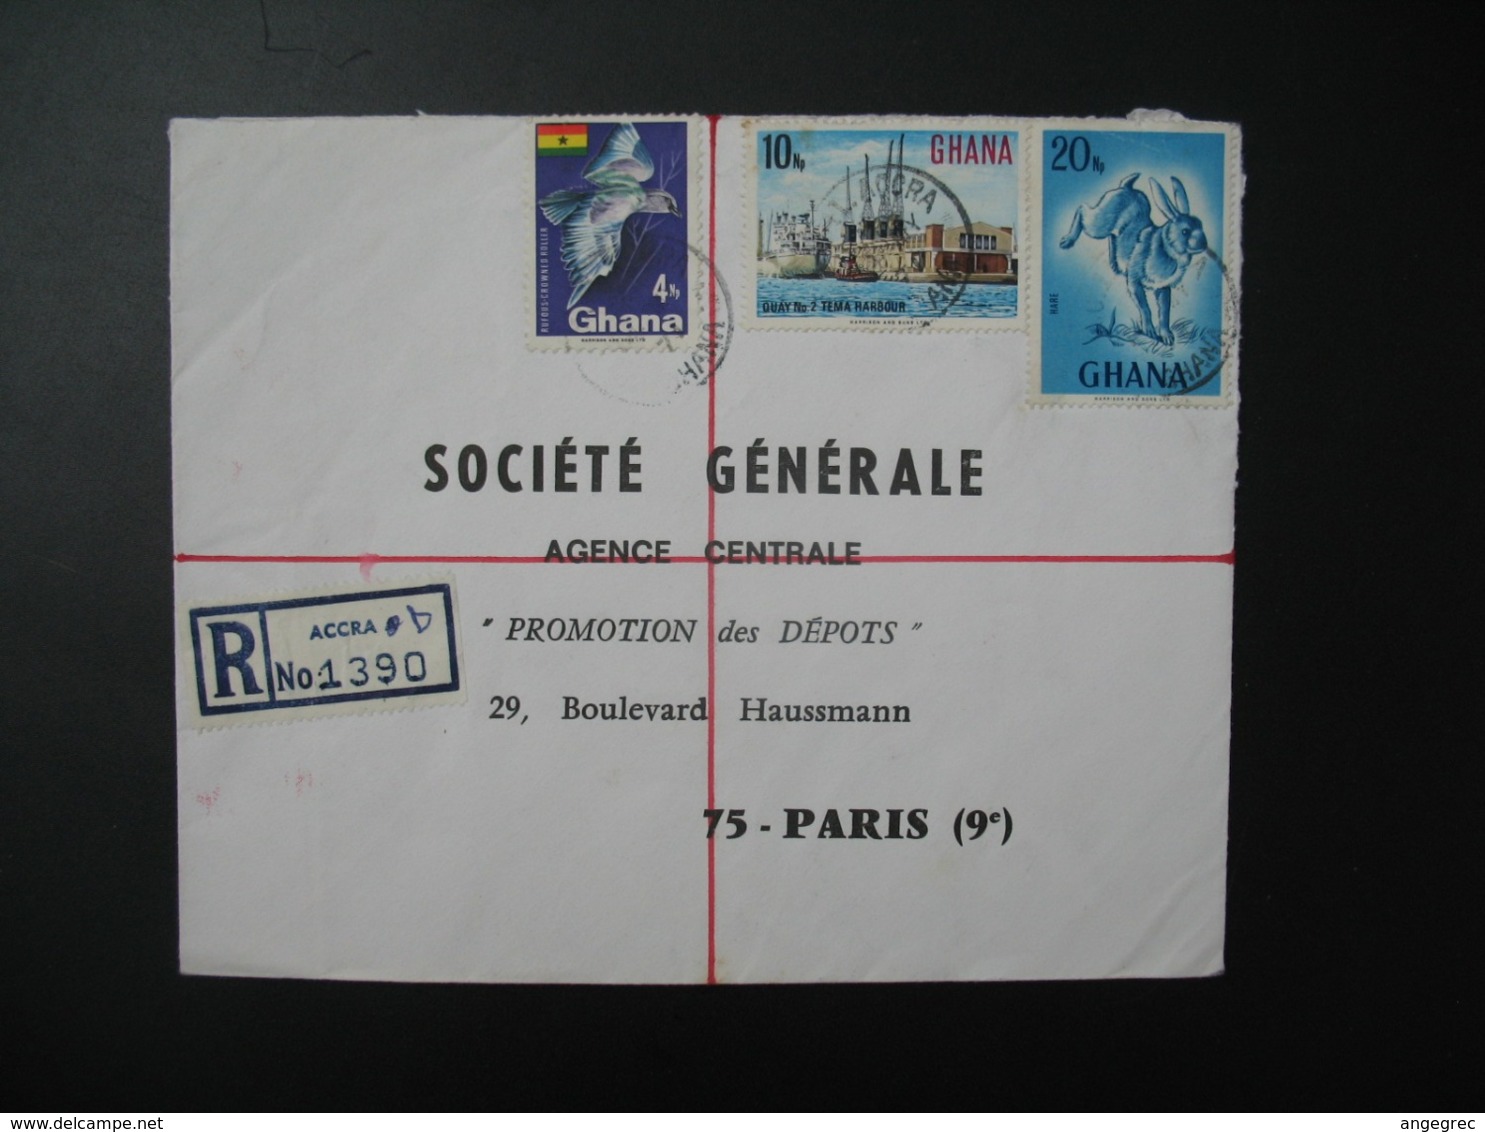 Enveloppe  AR  1390 Ghana 1971 Pour La Sté Générale  Agence Centrale Promotion Des Dépots  en France  Bd Haussmann Paris - Ghana (1957-...)